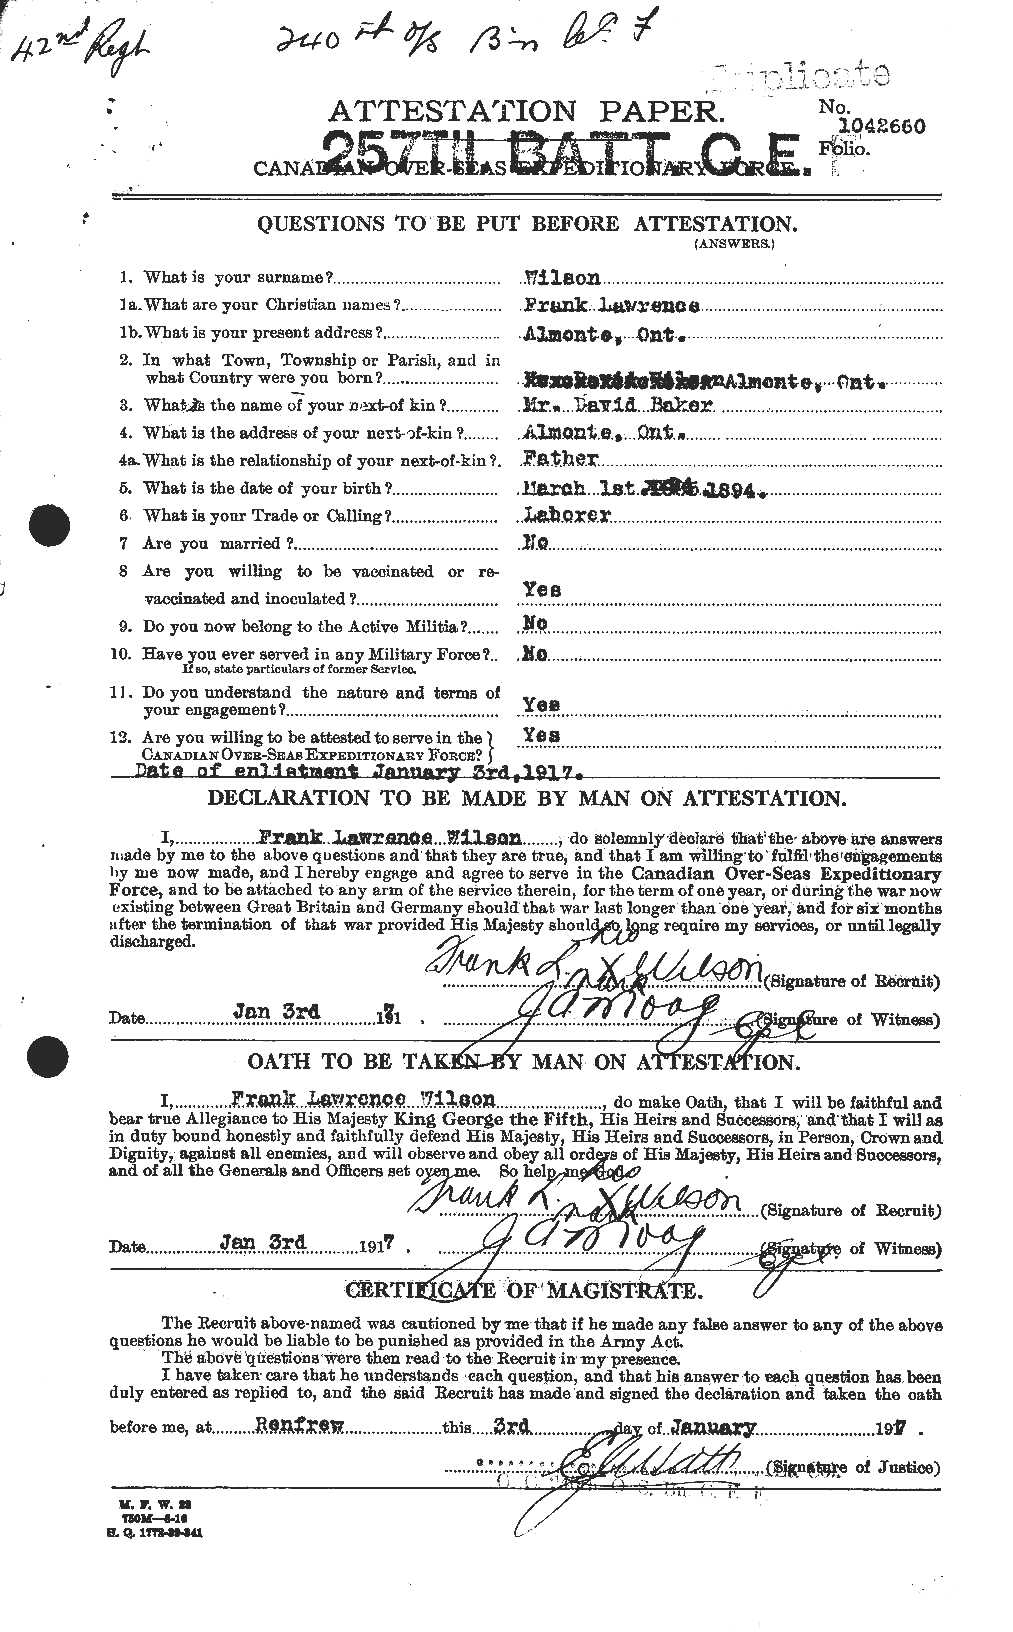 Dossiers du Personnel de la Première Guerre mondiale - CEC 680679a